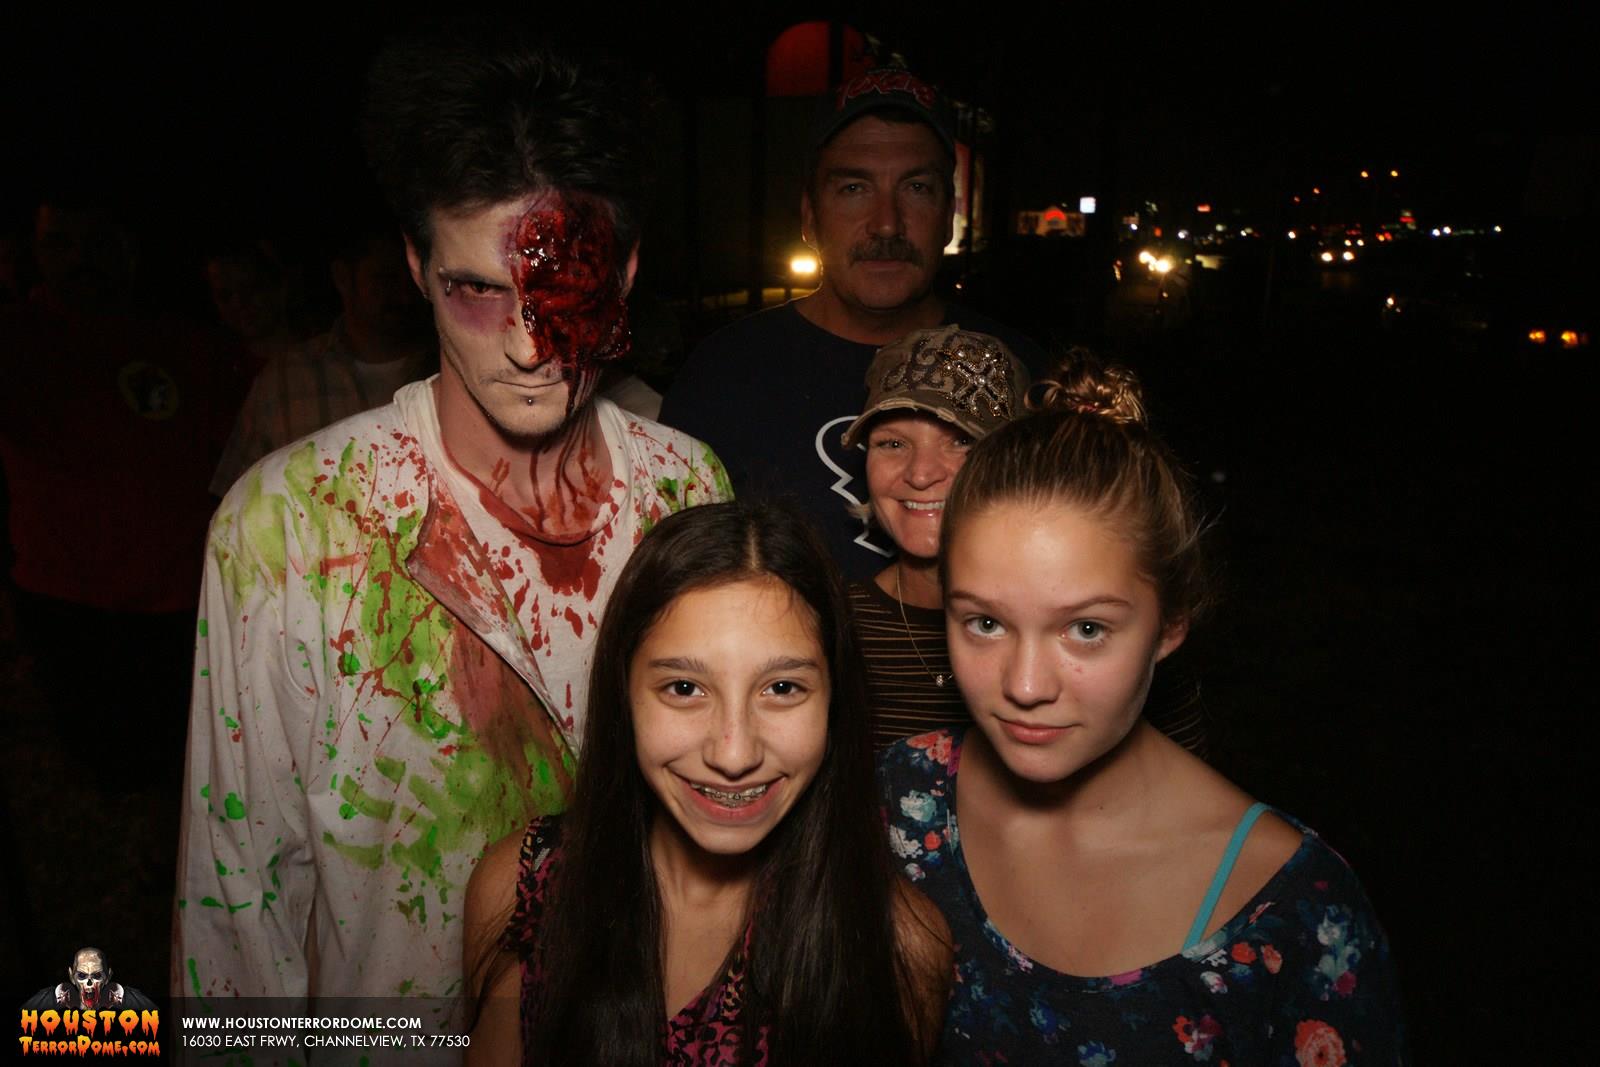 Zombie photo bombs family photo. 